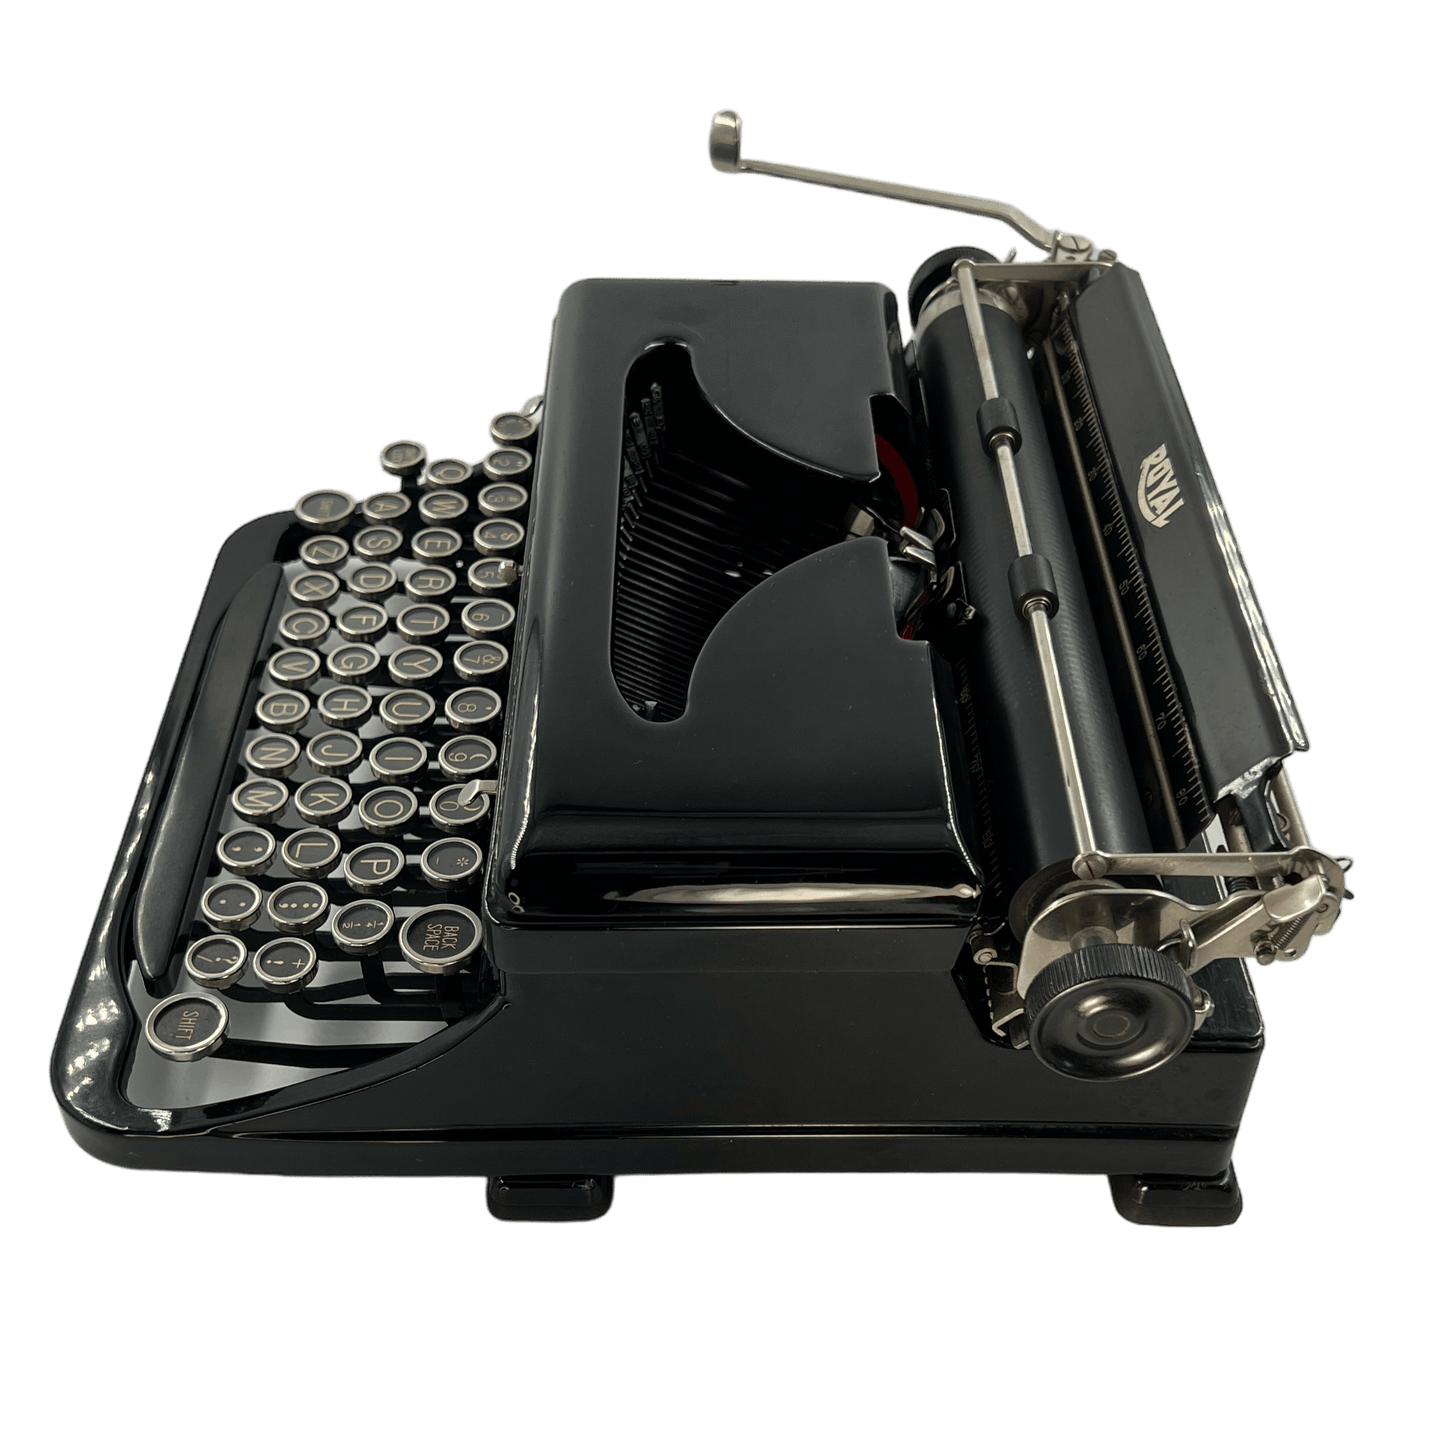 Toronto Typewriters Portable Typewriter Royal O (Black) Typewriter